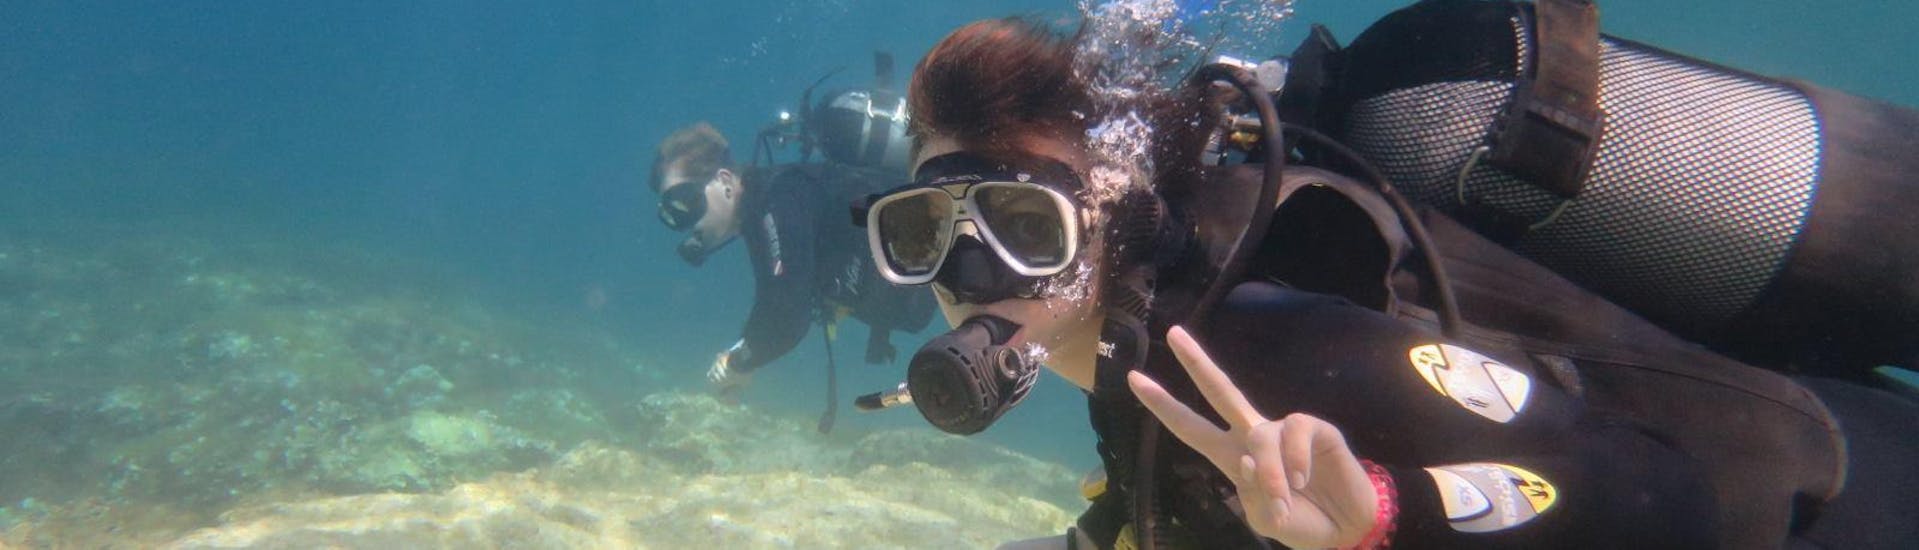 Immersioni subacquee per principianti a Bugibba, Malta.